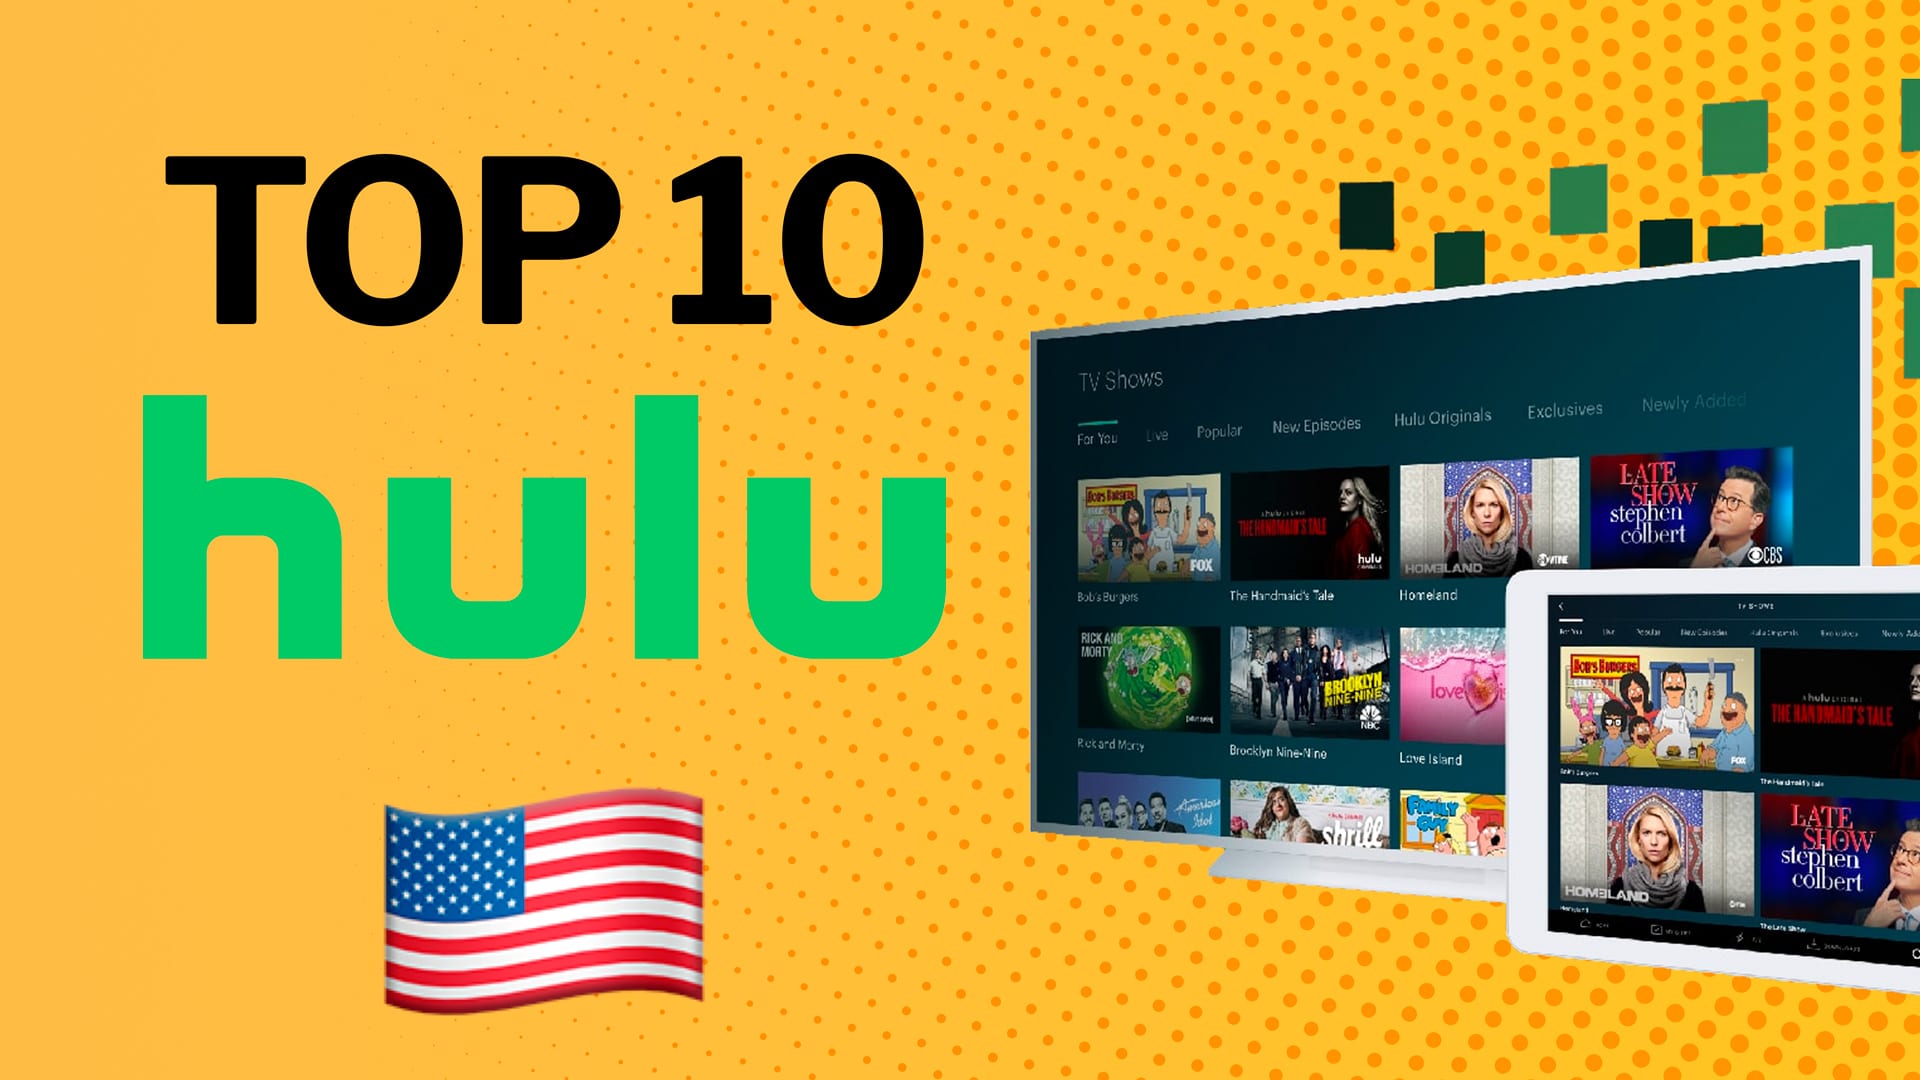 Aunque con menos alcance que sus competidores, Hulu se ha convertido en una de las plataformas favoritas del público. (Infobae)